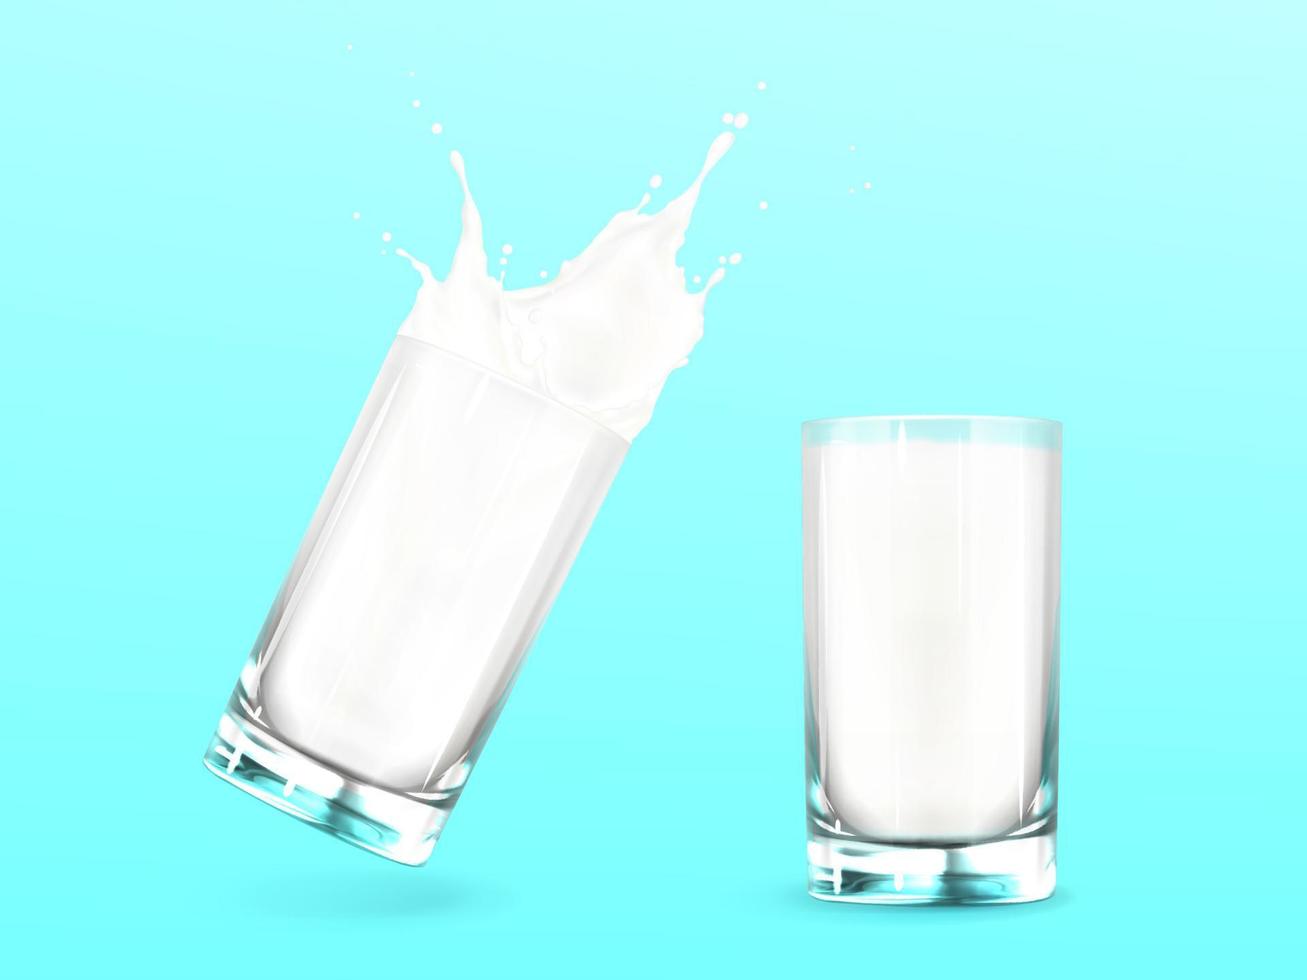 leche en vaso con salpicadura, bebida láctea blanca vector